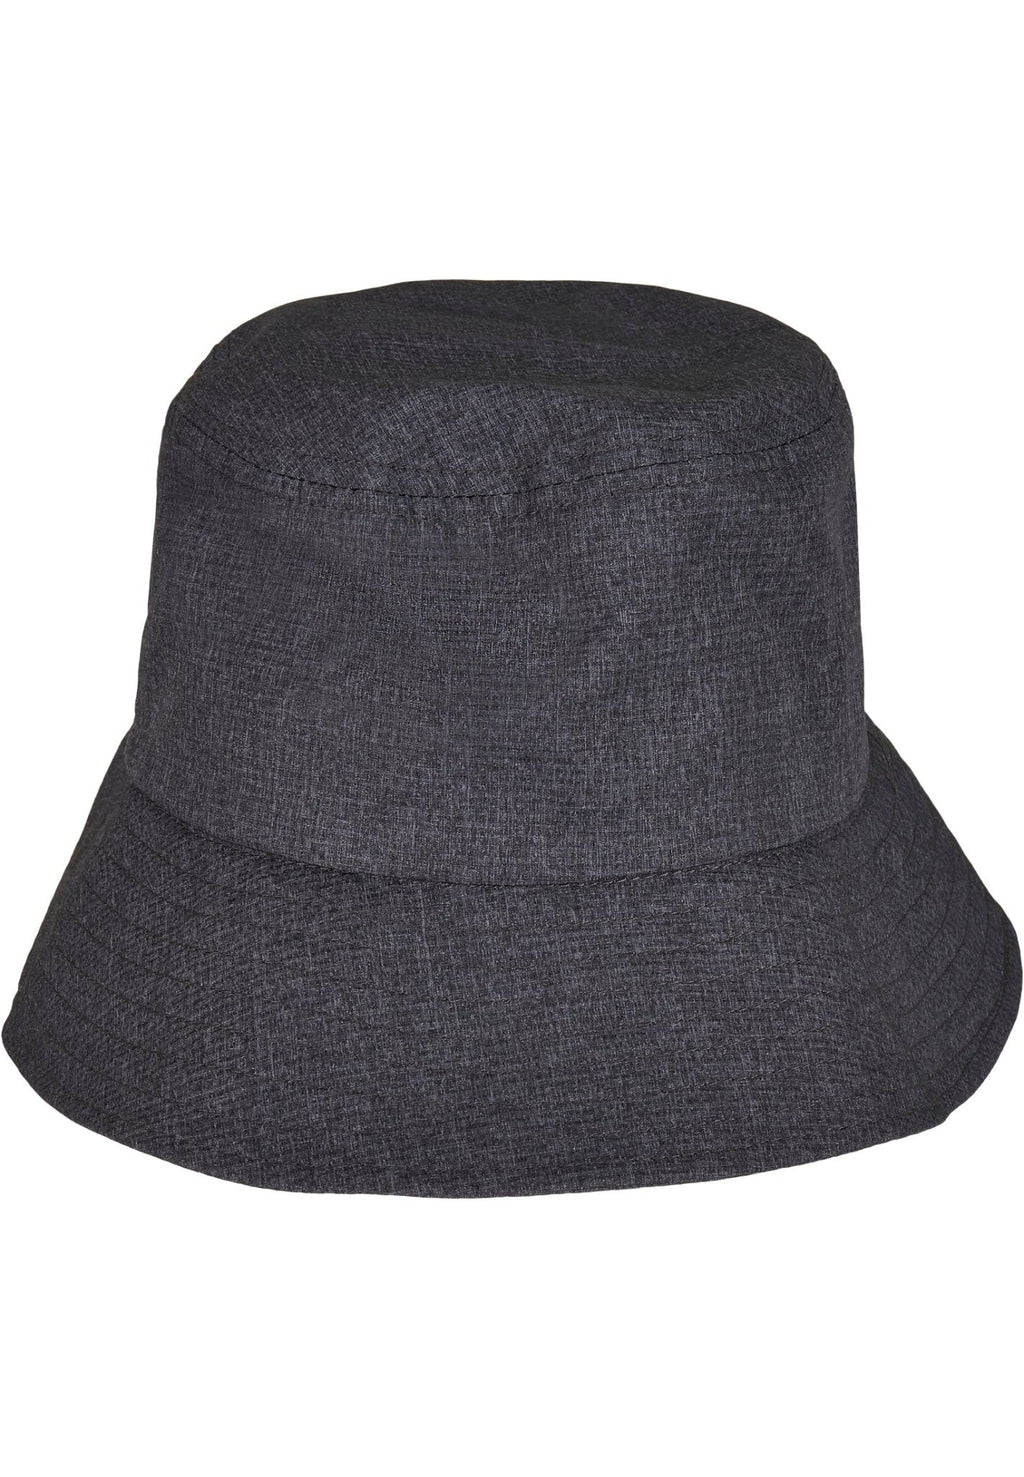 Casquette ajustable Flexfit Bucket Hat - Gris chiné